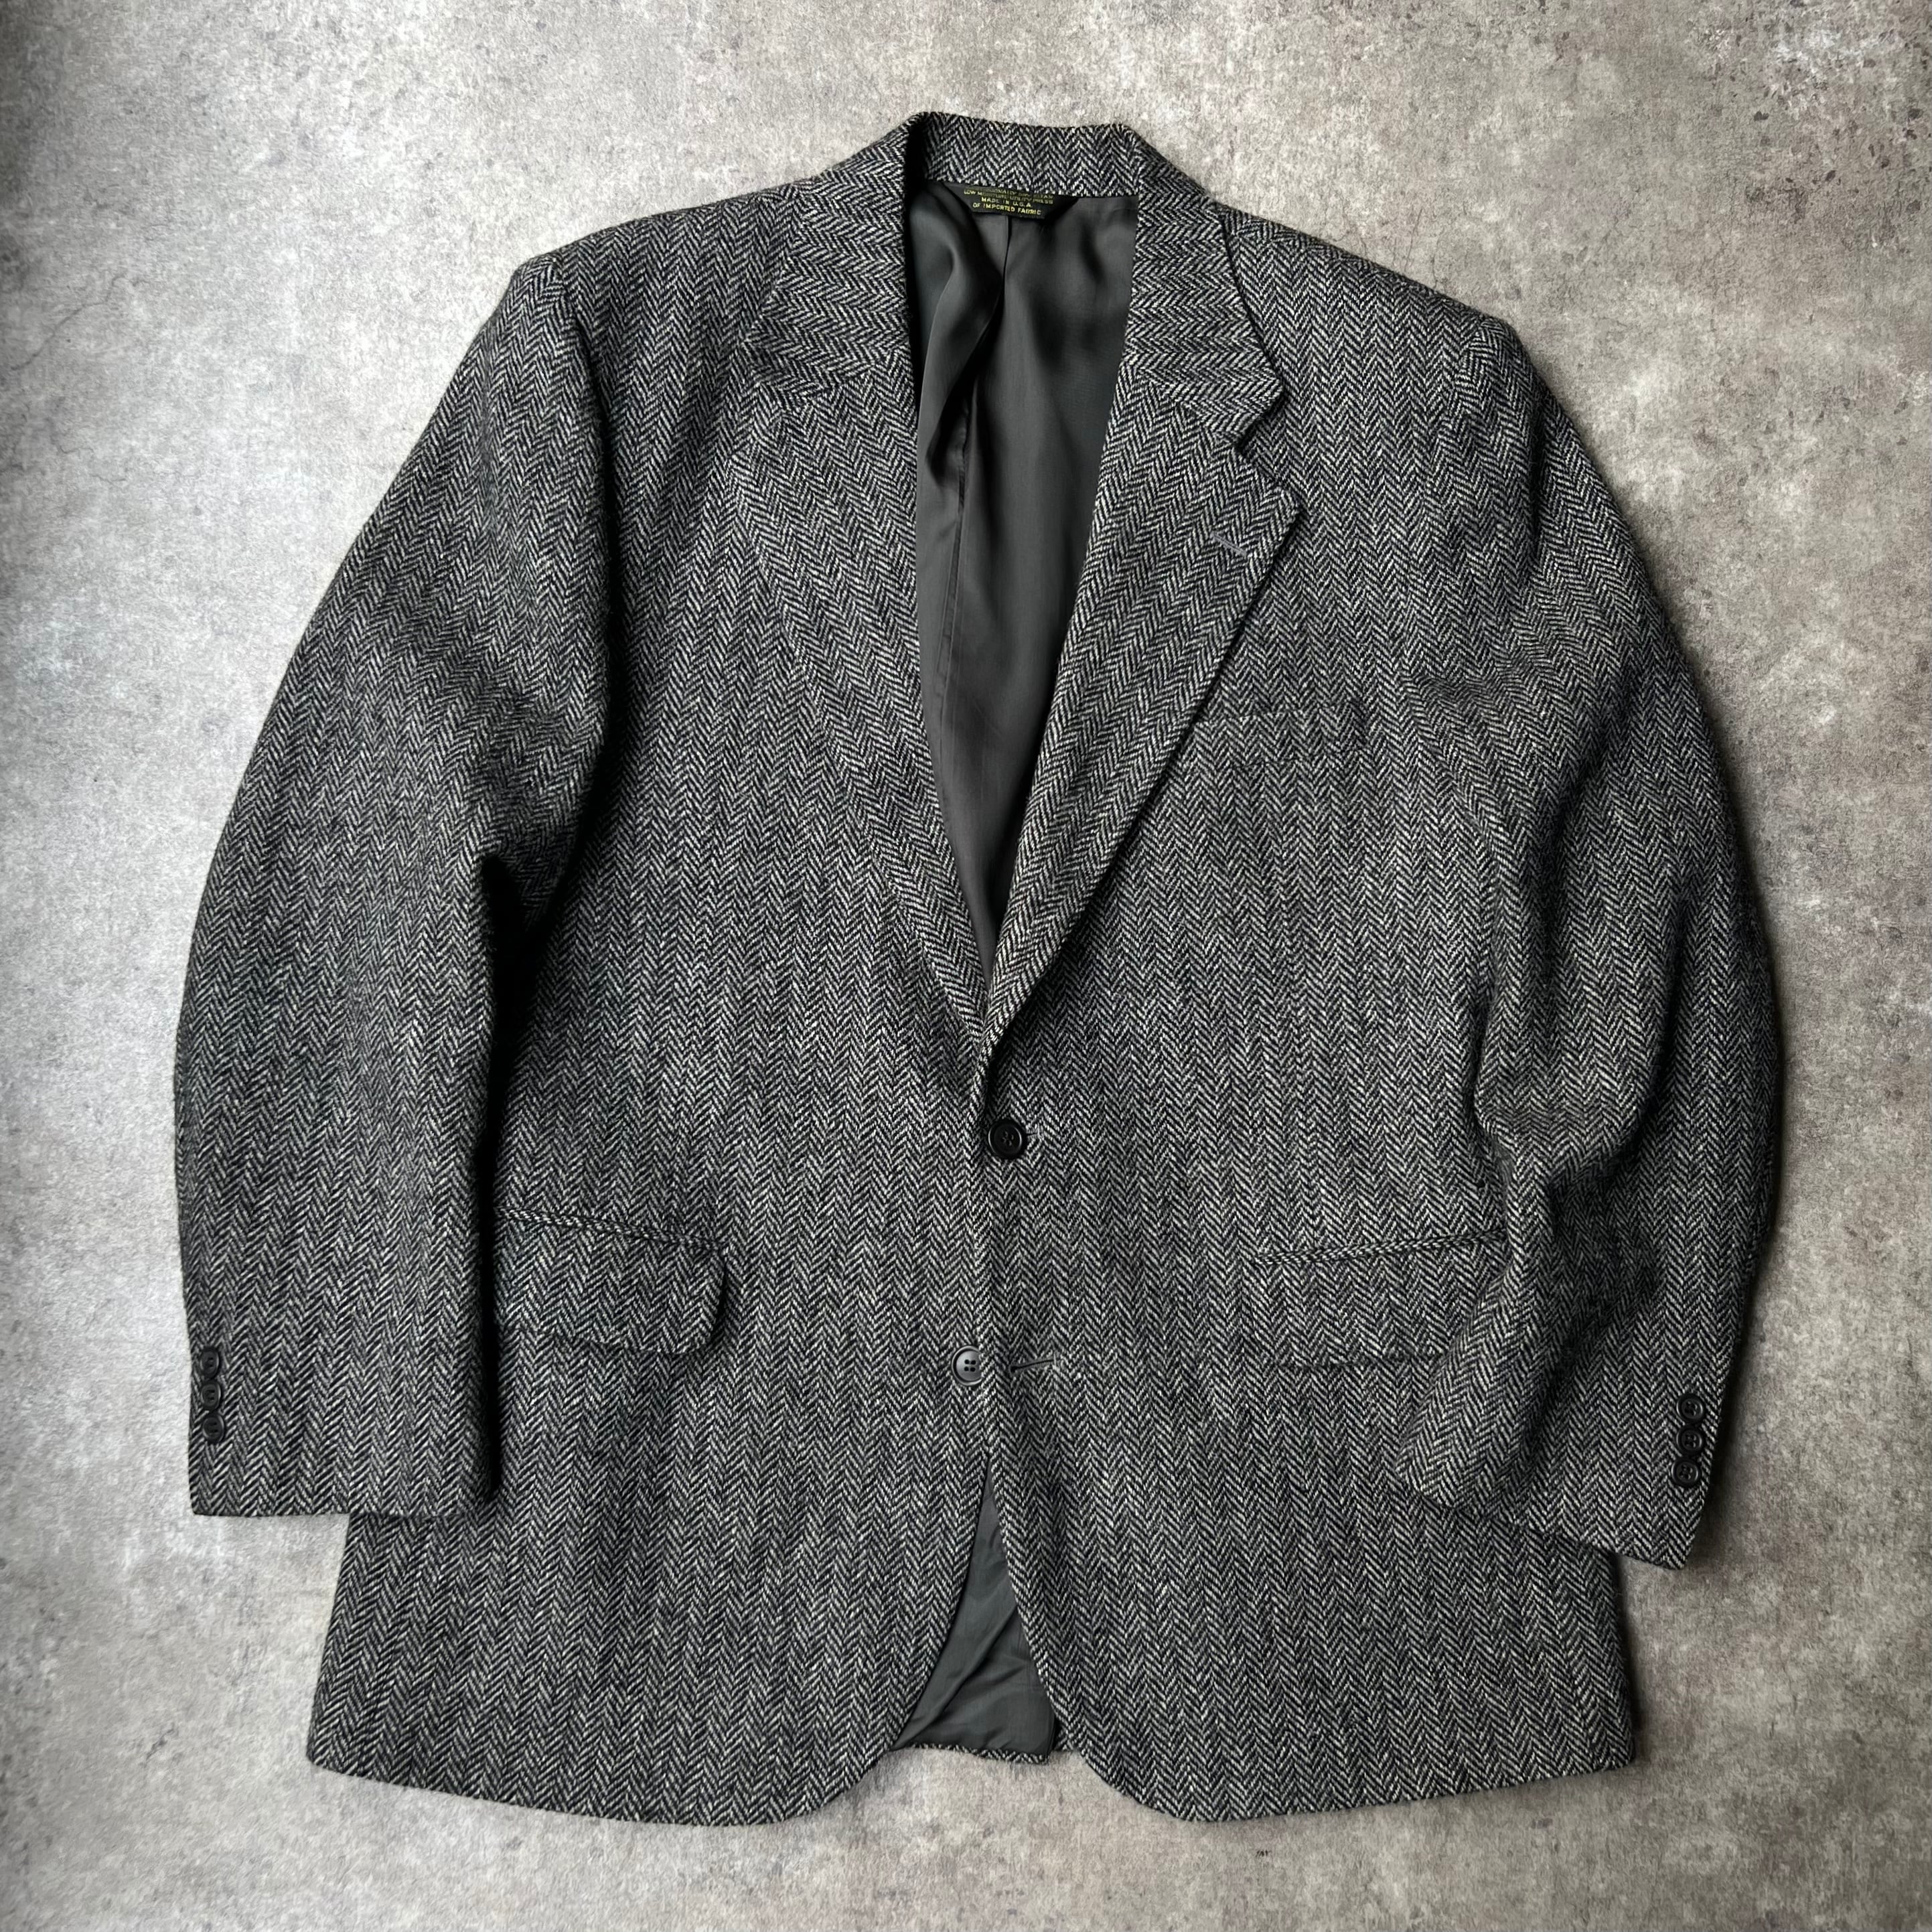 Harris Tweed Wool Tweed Jacket 1980-90s - テーラードジャケット